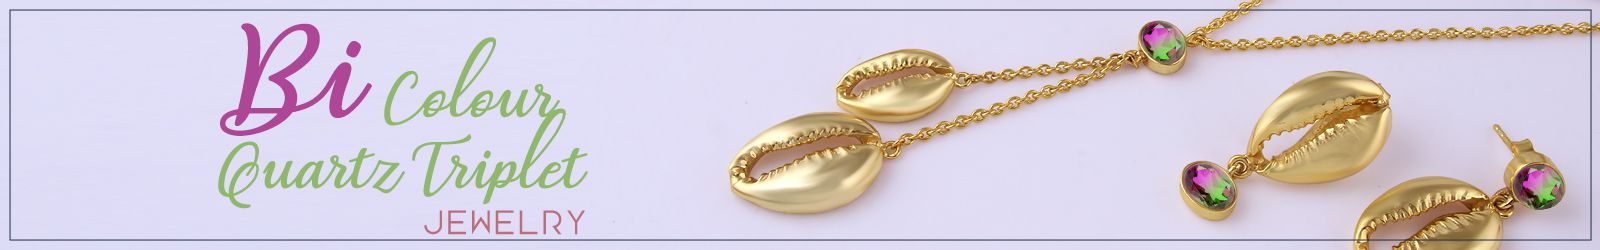 Silver Bi Colour Quartz Triplet Jewelry Wholesale Supplier